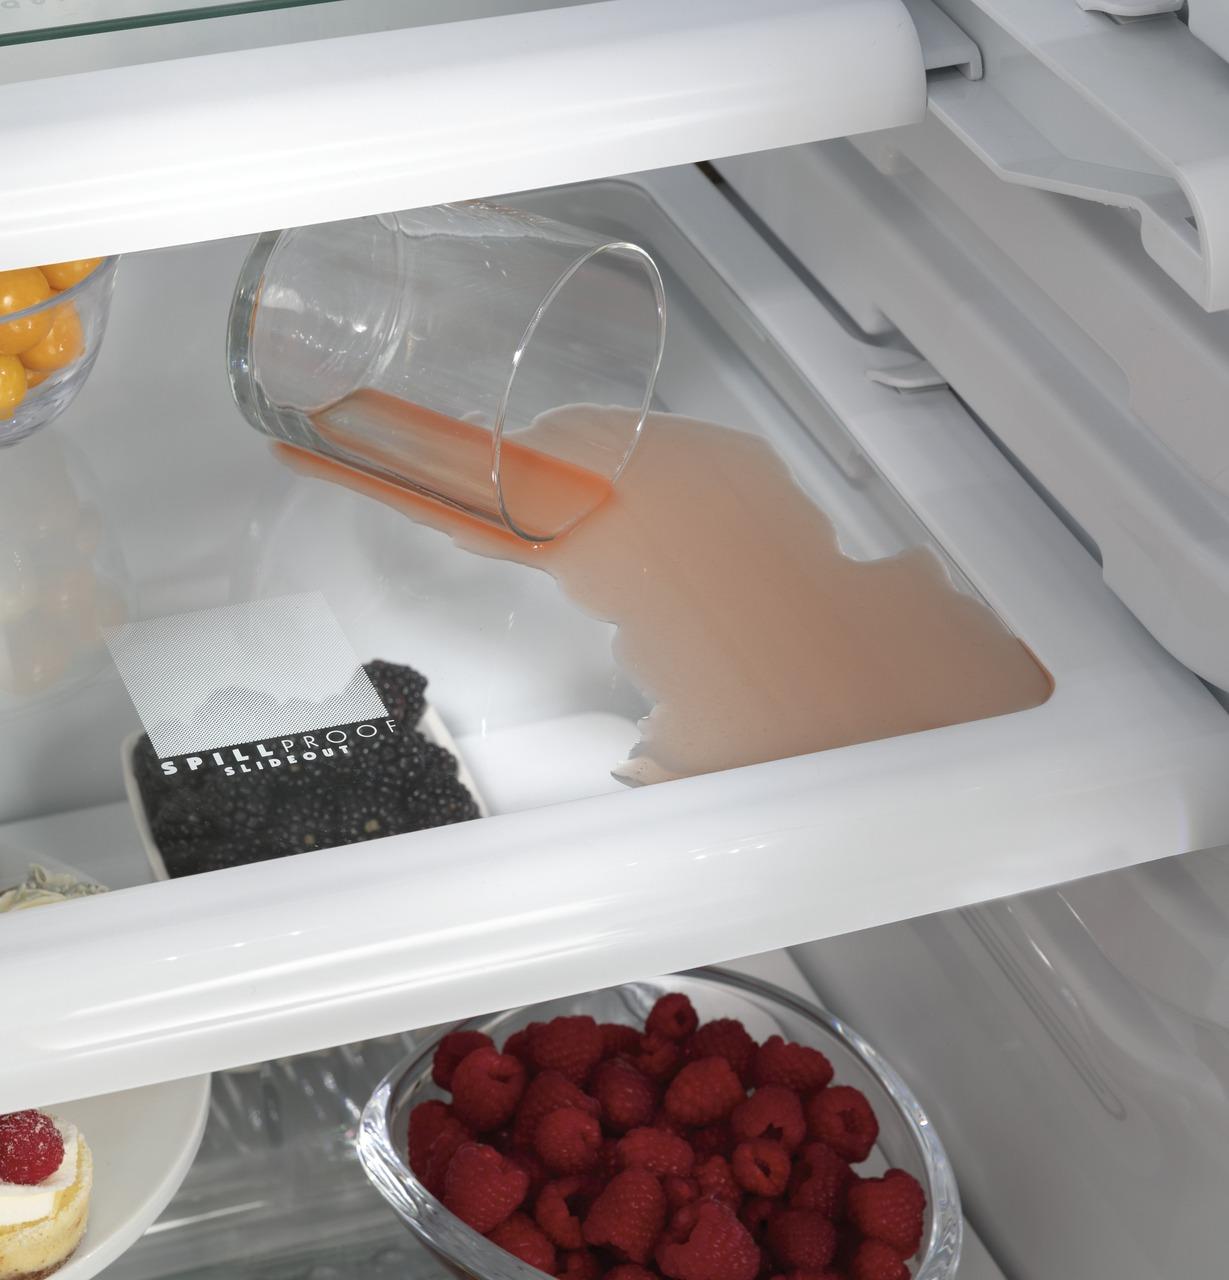 Cafe Caf(eback)™ 48" Smart Built-In Side-by-Side Refrigerator